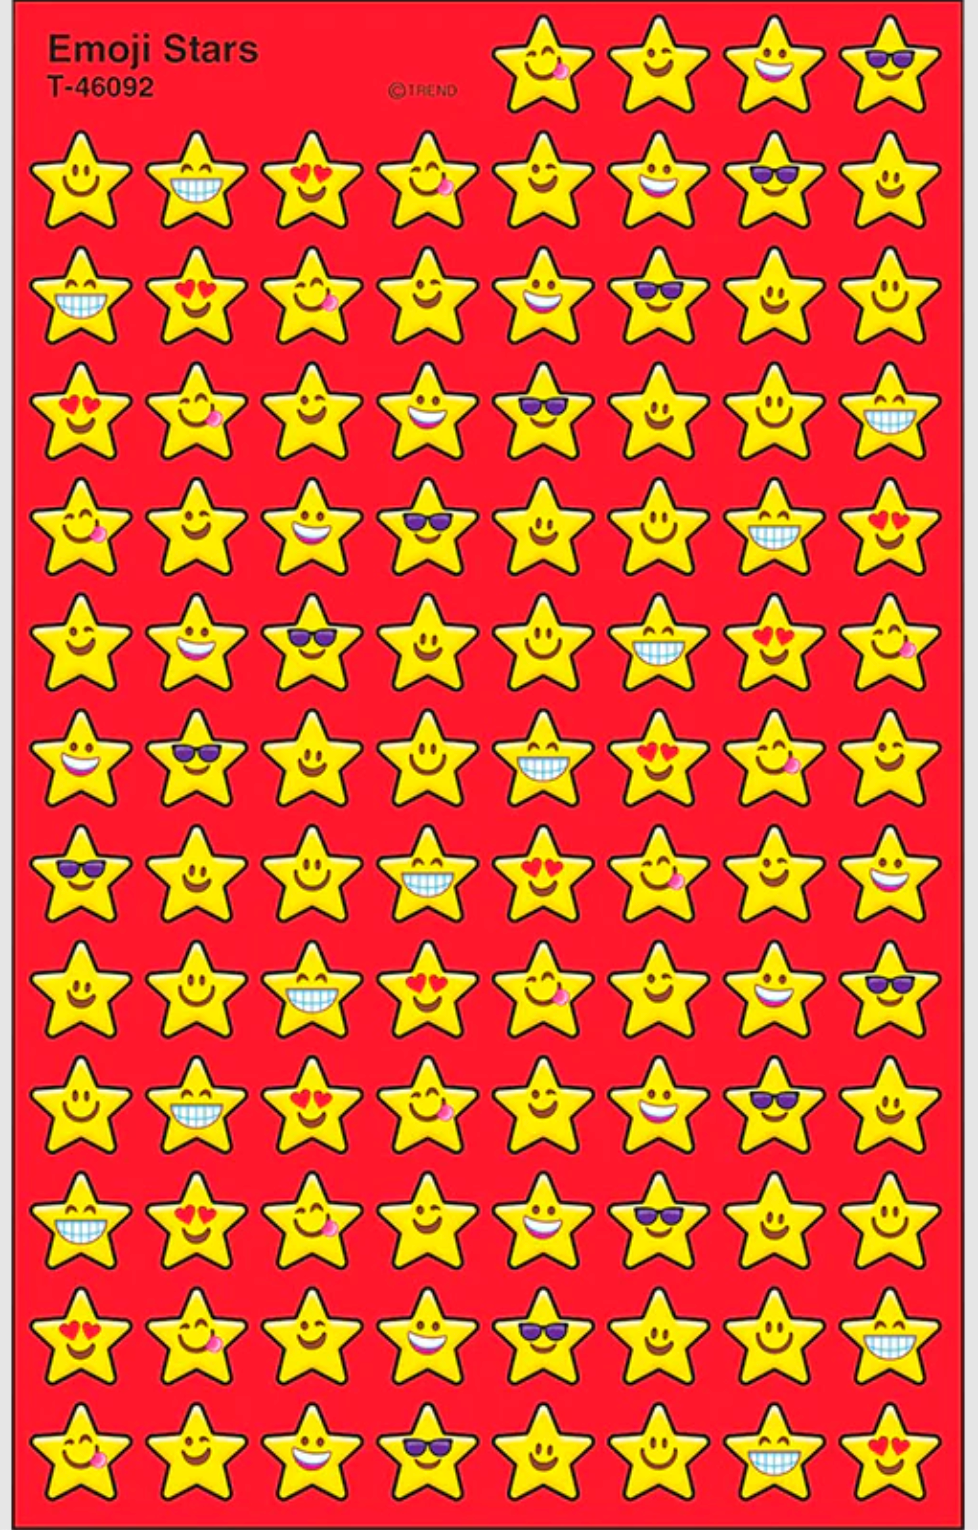 Estrellas emoji 800 pzas.